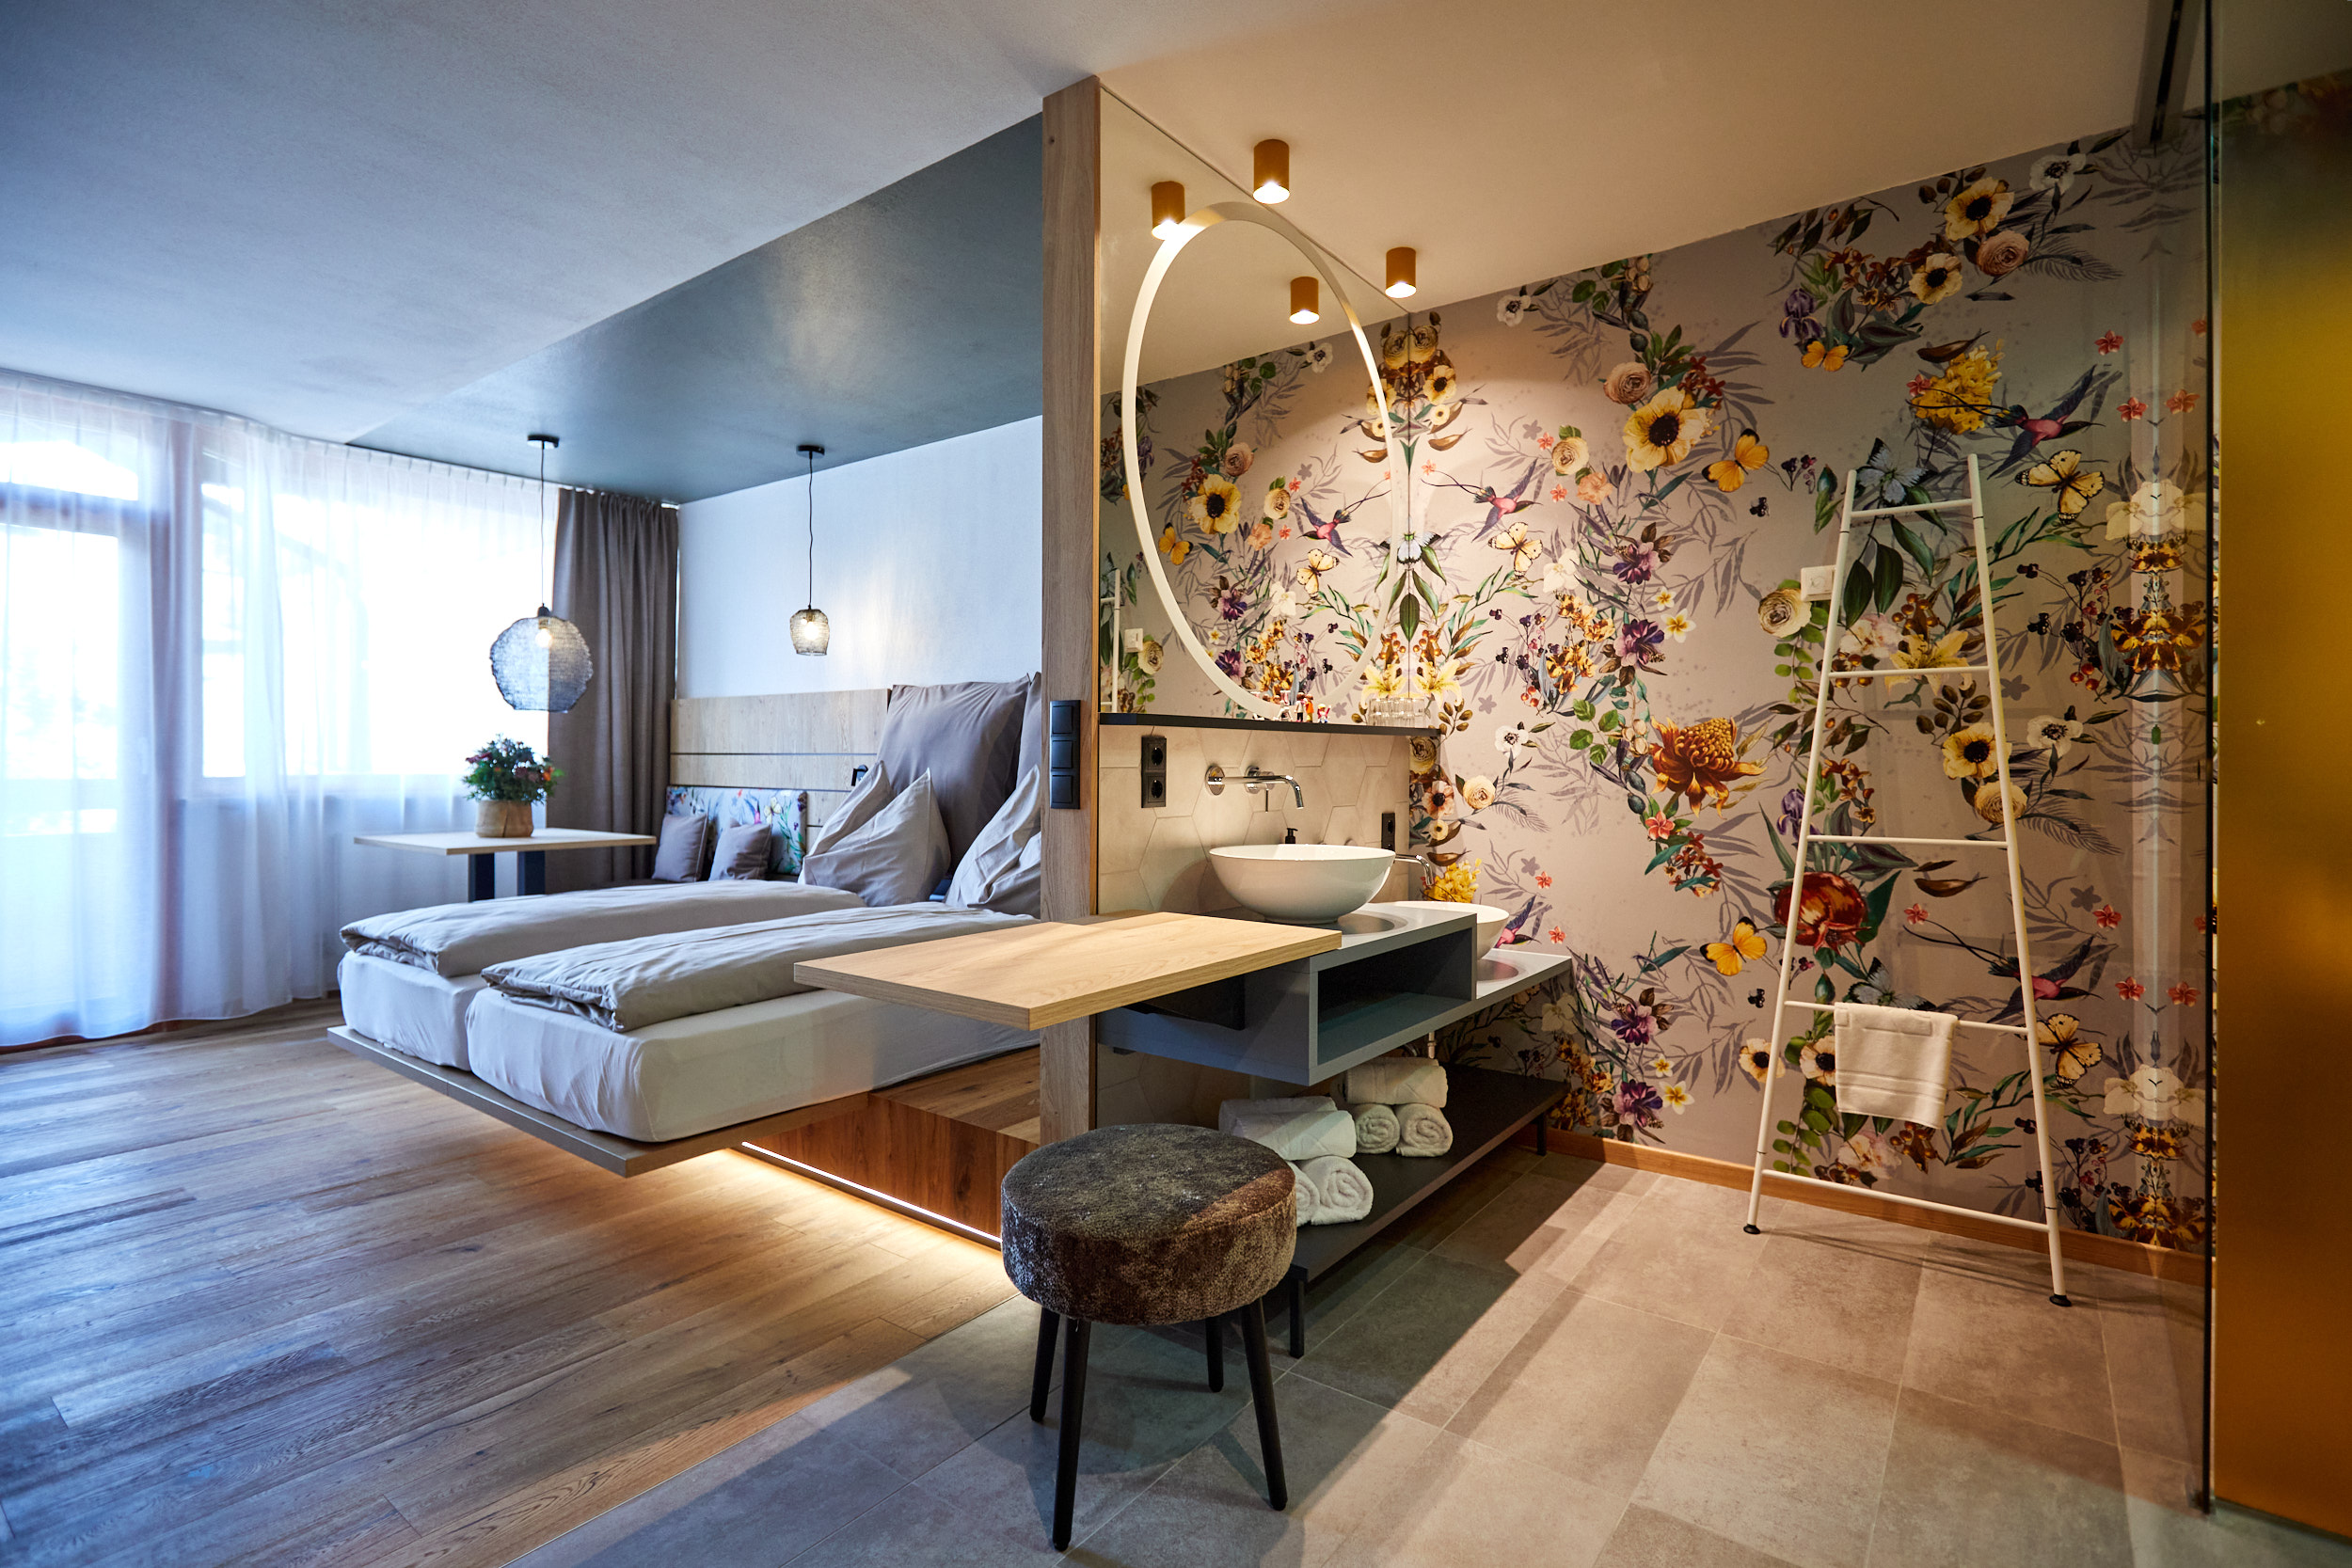 Hotel TaNte FriDa LeChic Zimmer mit Blick ins Open Space Badezimmer und Schlafbereich ©Eder Hotels GmbH